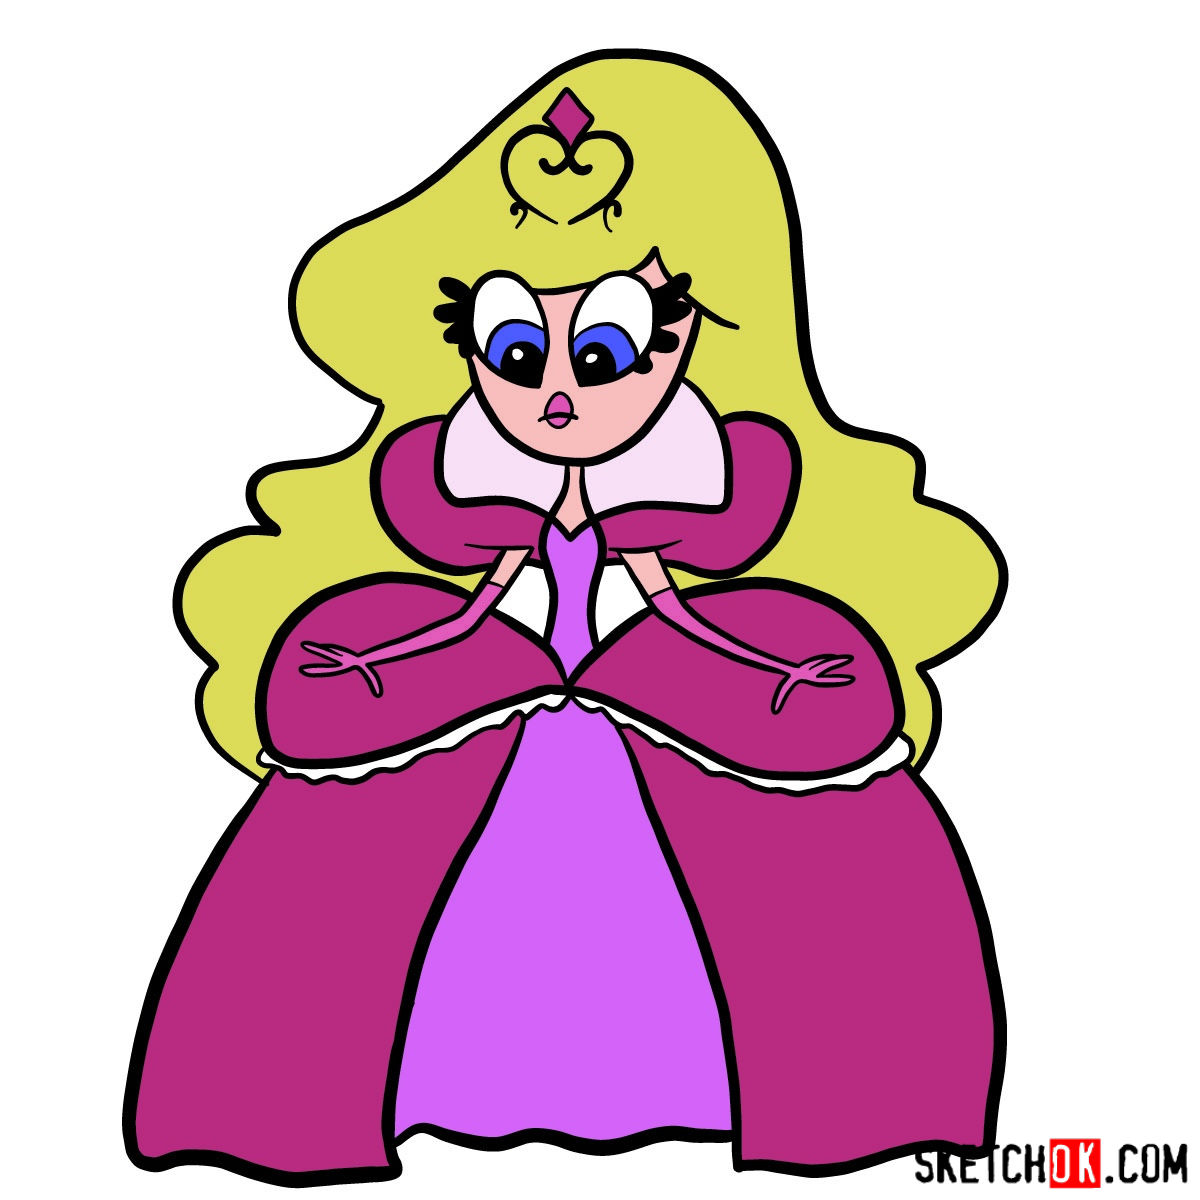 How to draw Princess Demurra